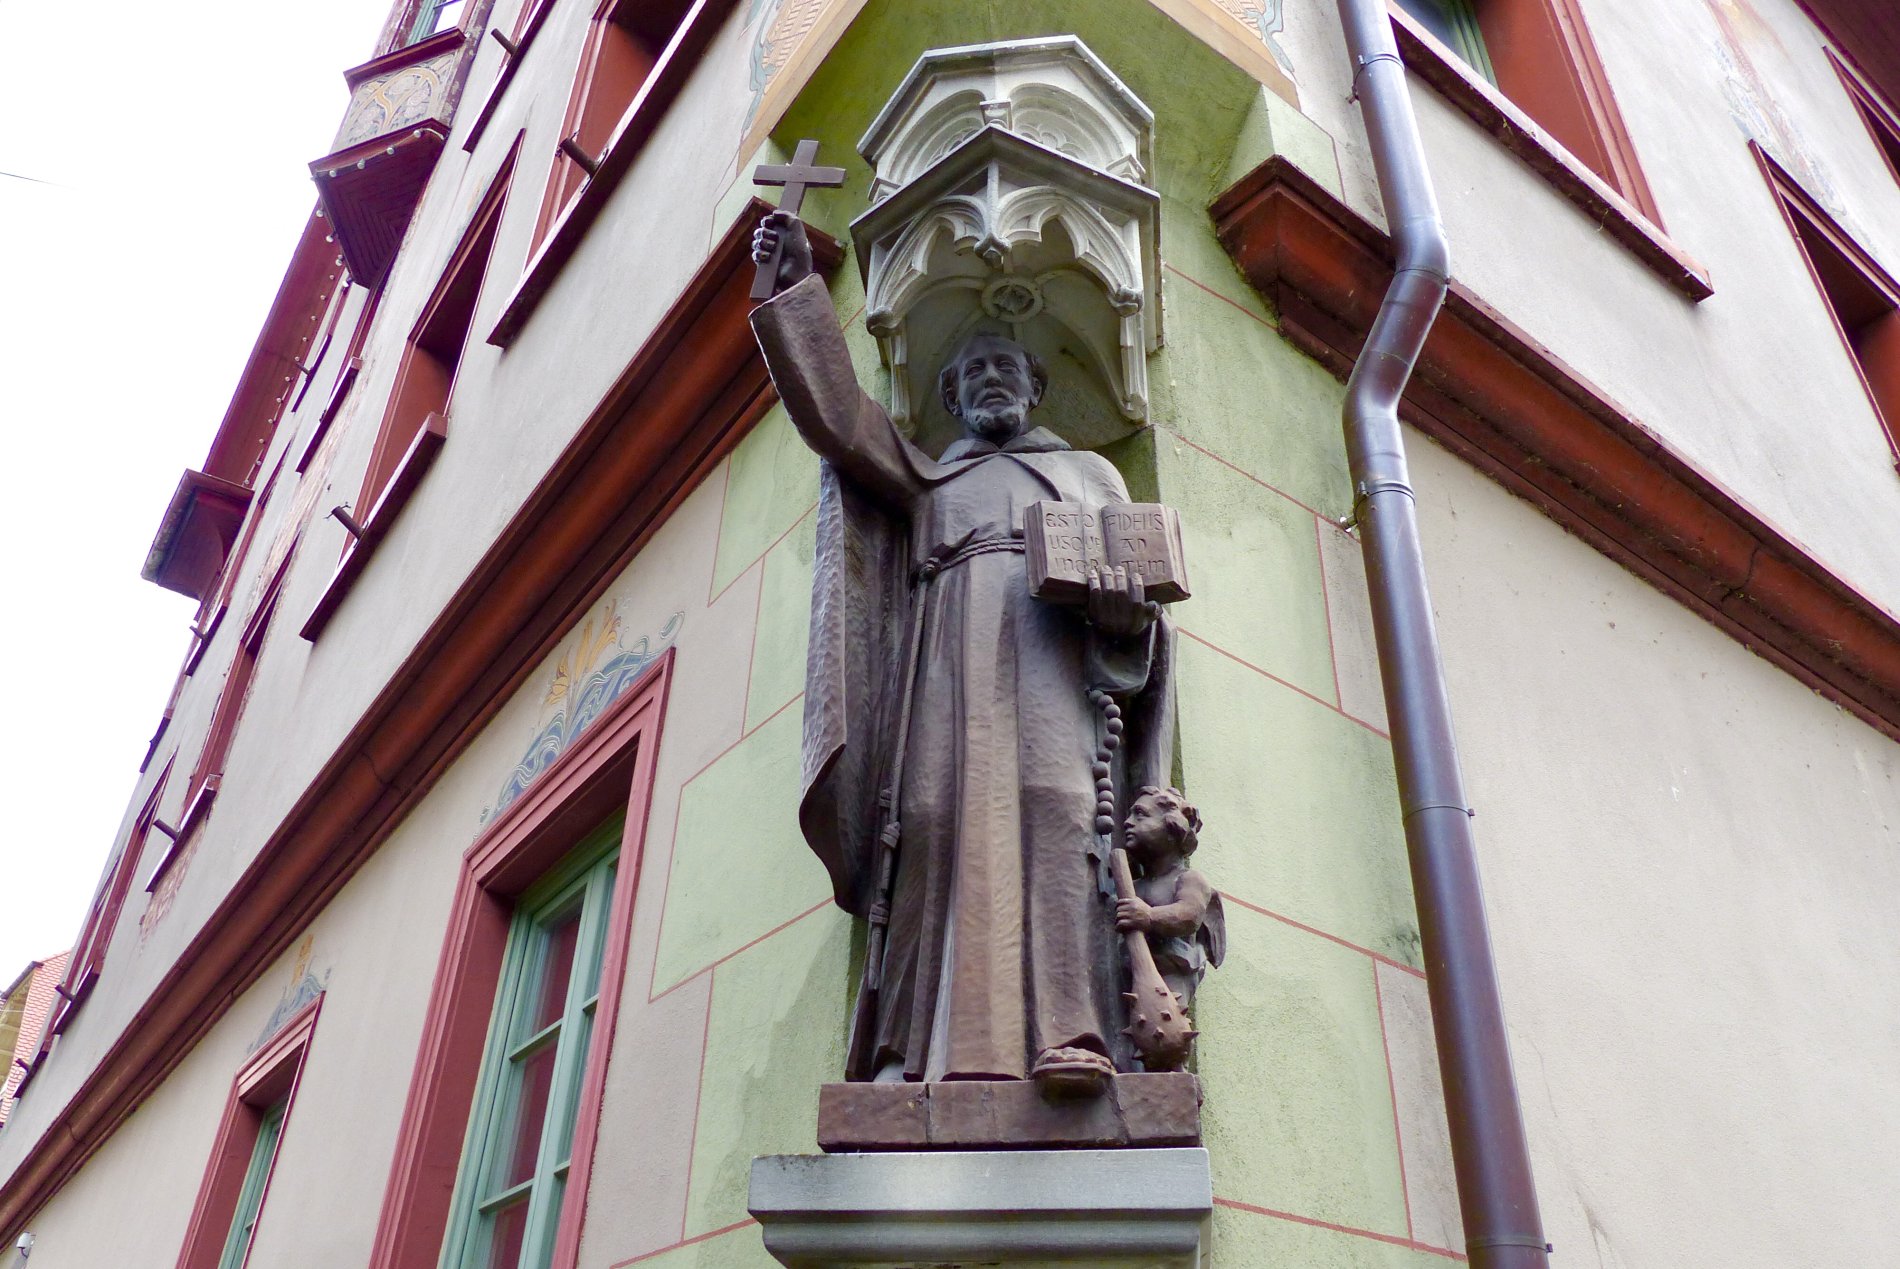 Holzstatue des Heiligen Fidelis an der Nordostecke des Fidelishauses. In der erhobenen rechten Hand hält der Heilige ein Kreuz. Zu seinen Füßen steht ein kleiner Engel mit mit dem Attribut des Heiligen Fidelis, einer Keule.